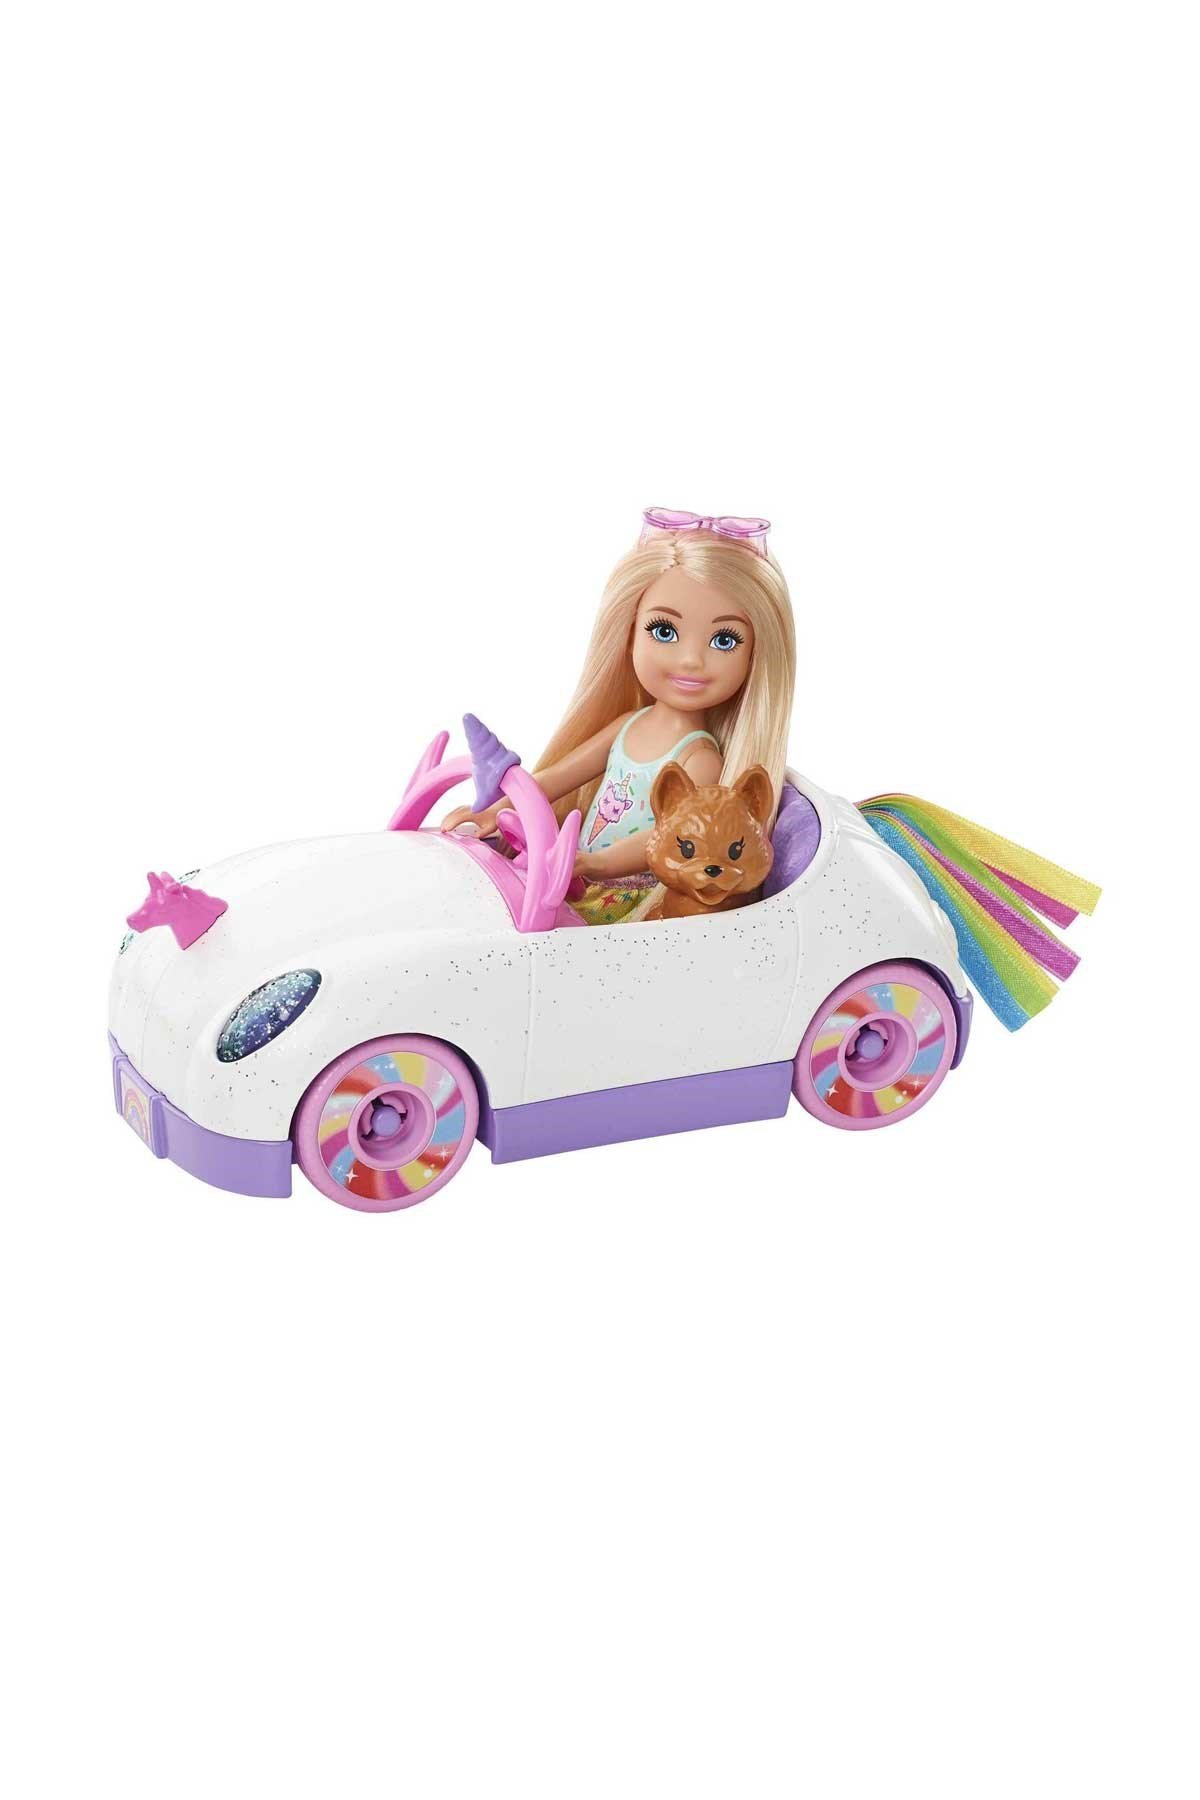 Barbie Chelsea Bebek ve Arabası